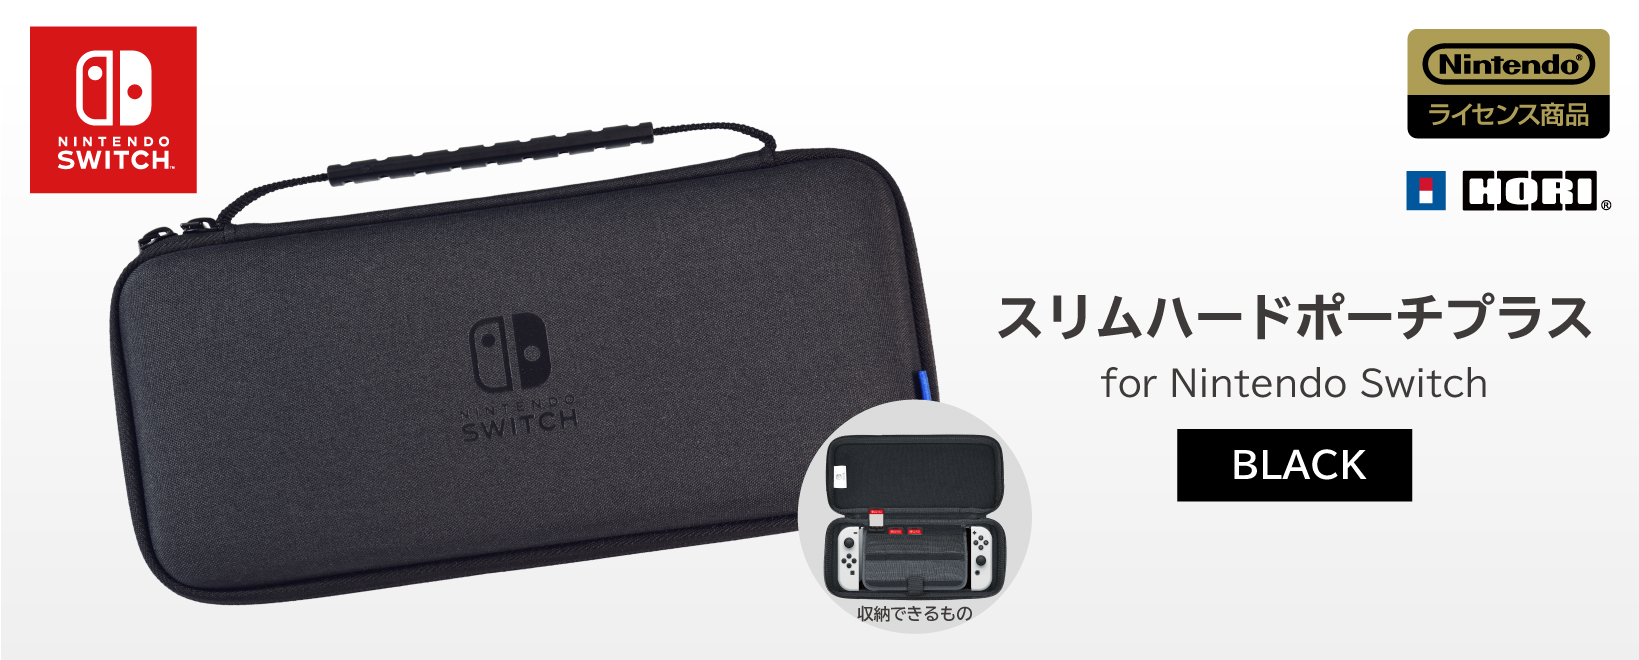 株式会社 HORI | スリムハードポーチ プラス for Nintendo Switch ブラック